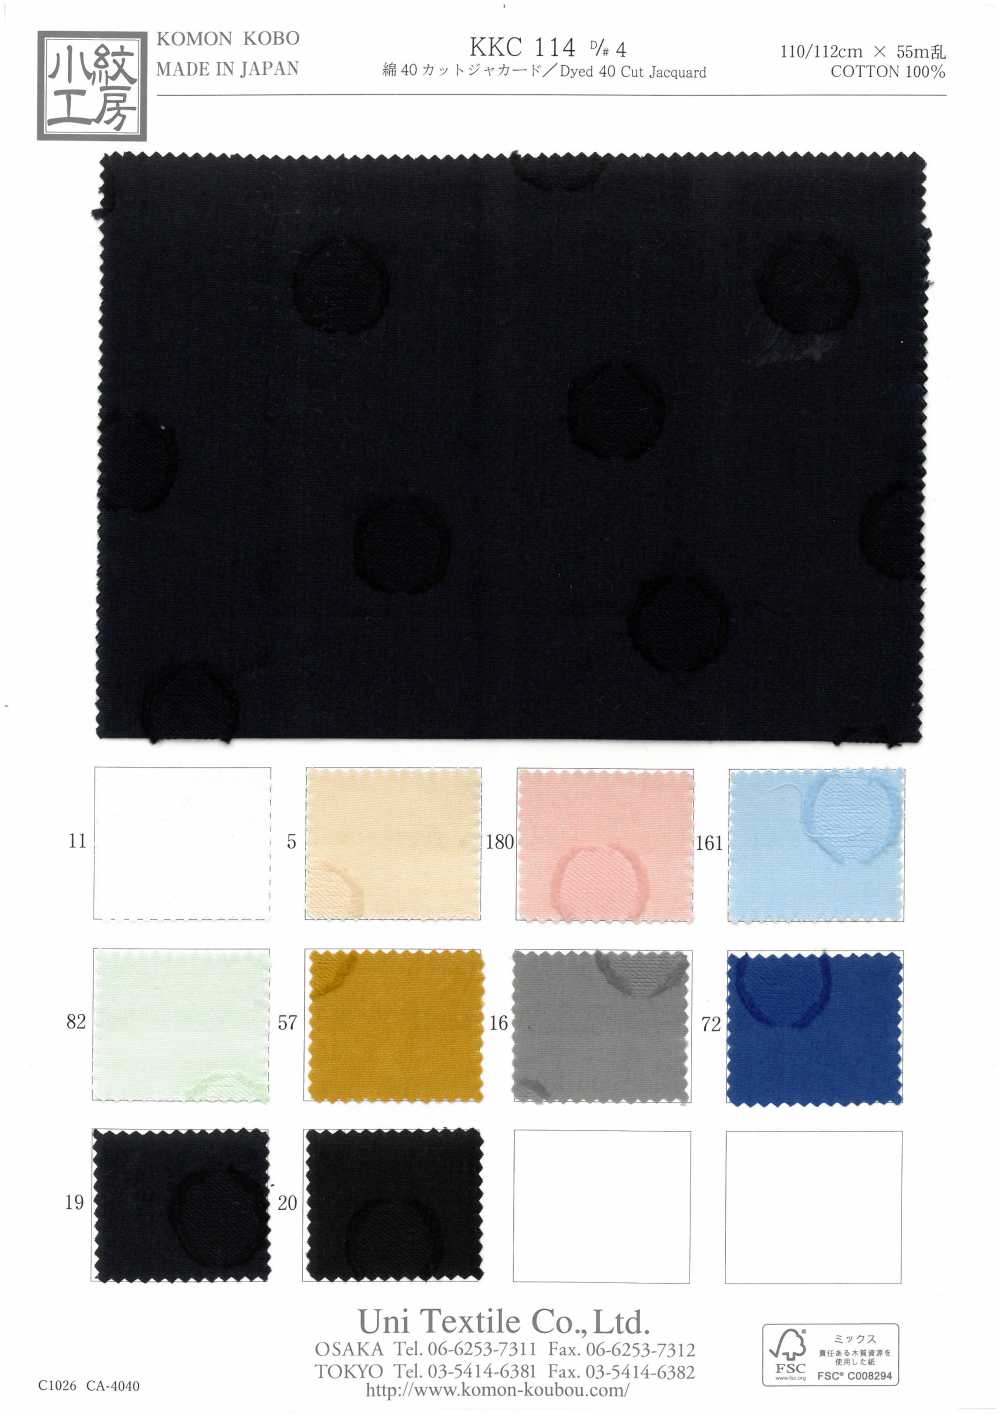 KKC114 D-4 40 Baumwoll-Jacquard[Textilgewebe] Uni Textile